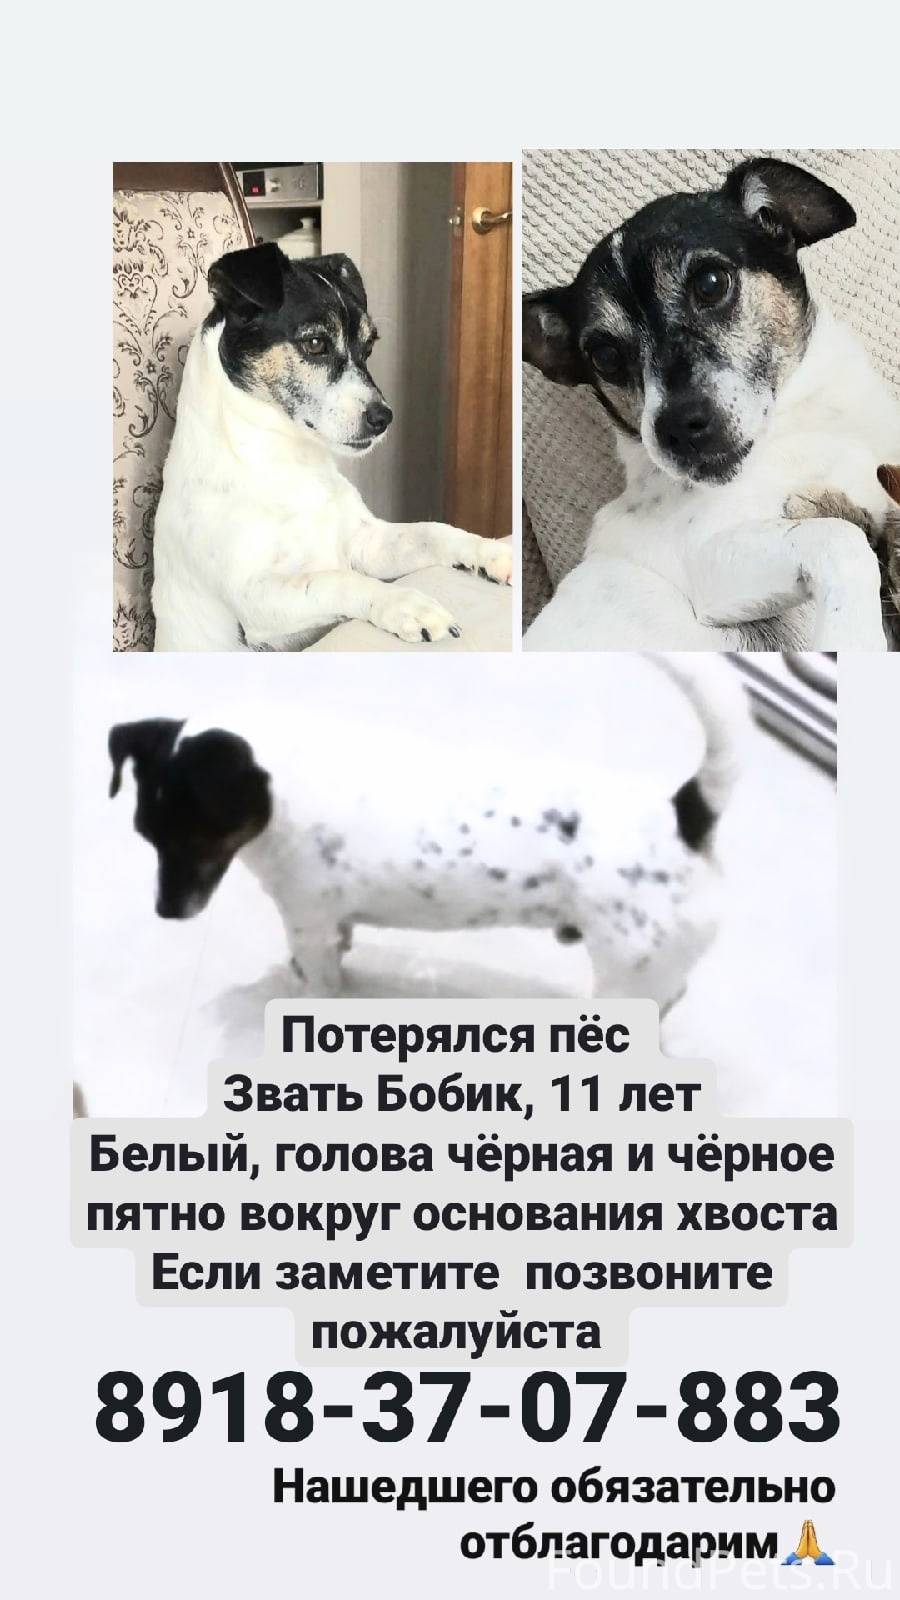 Пропала собака помогите. Пропала собака. Помогите собаке. Объявления о пропавших собаках Ульяновск. Выкса пропала собака.